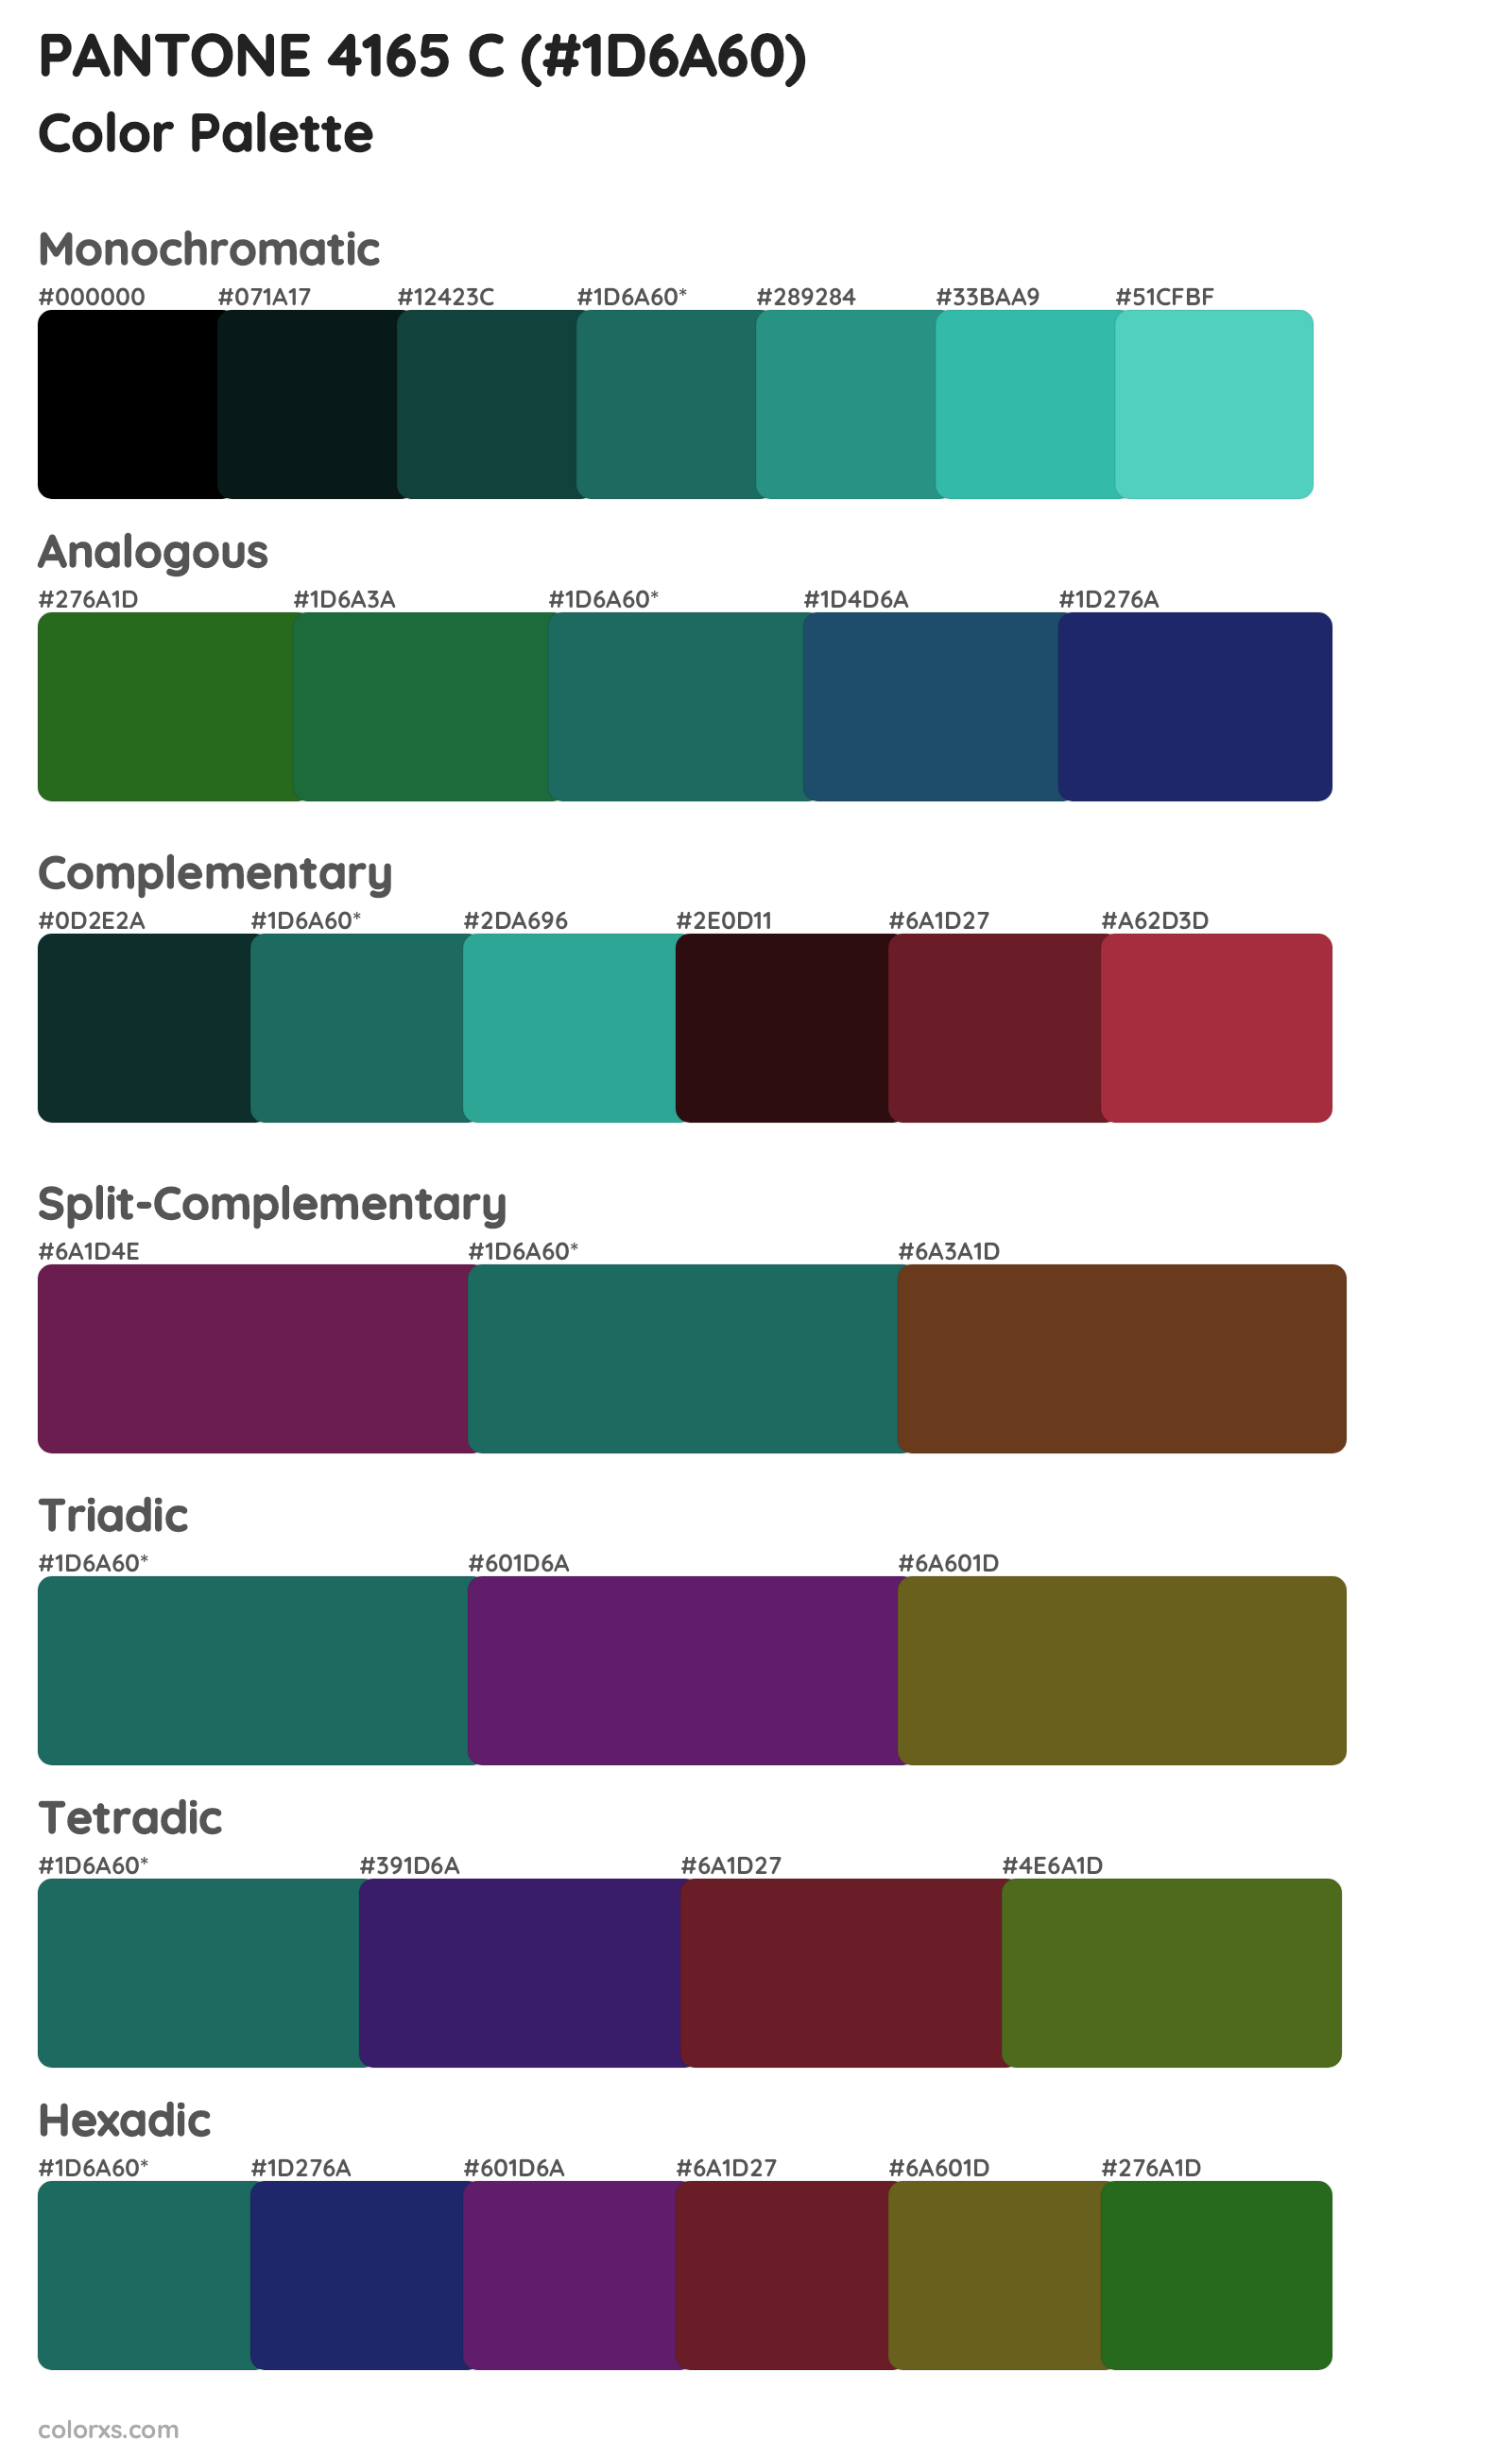 PANTONE 4165 C Color Scheme Palettes